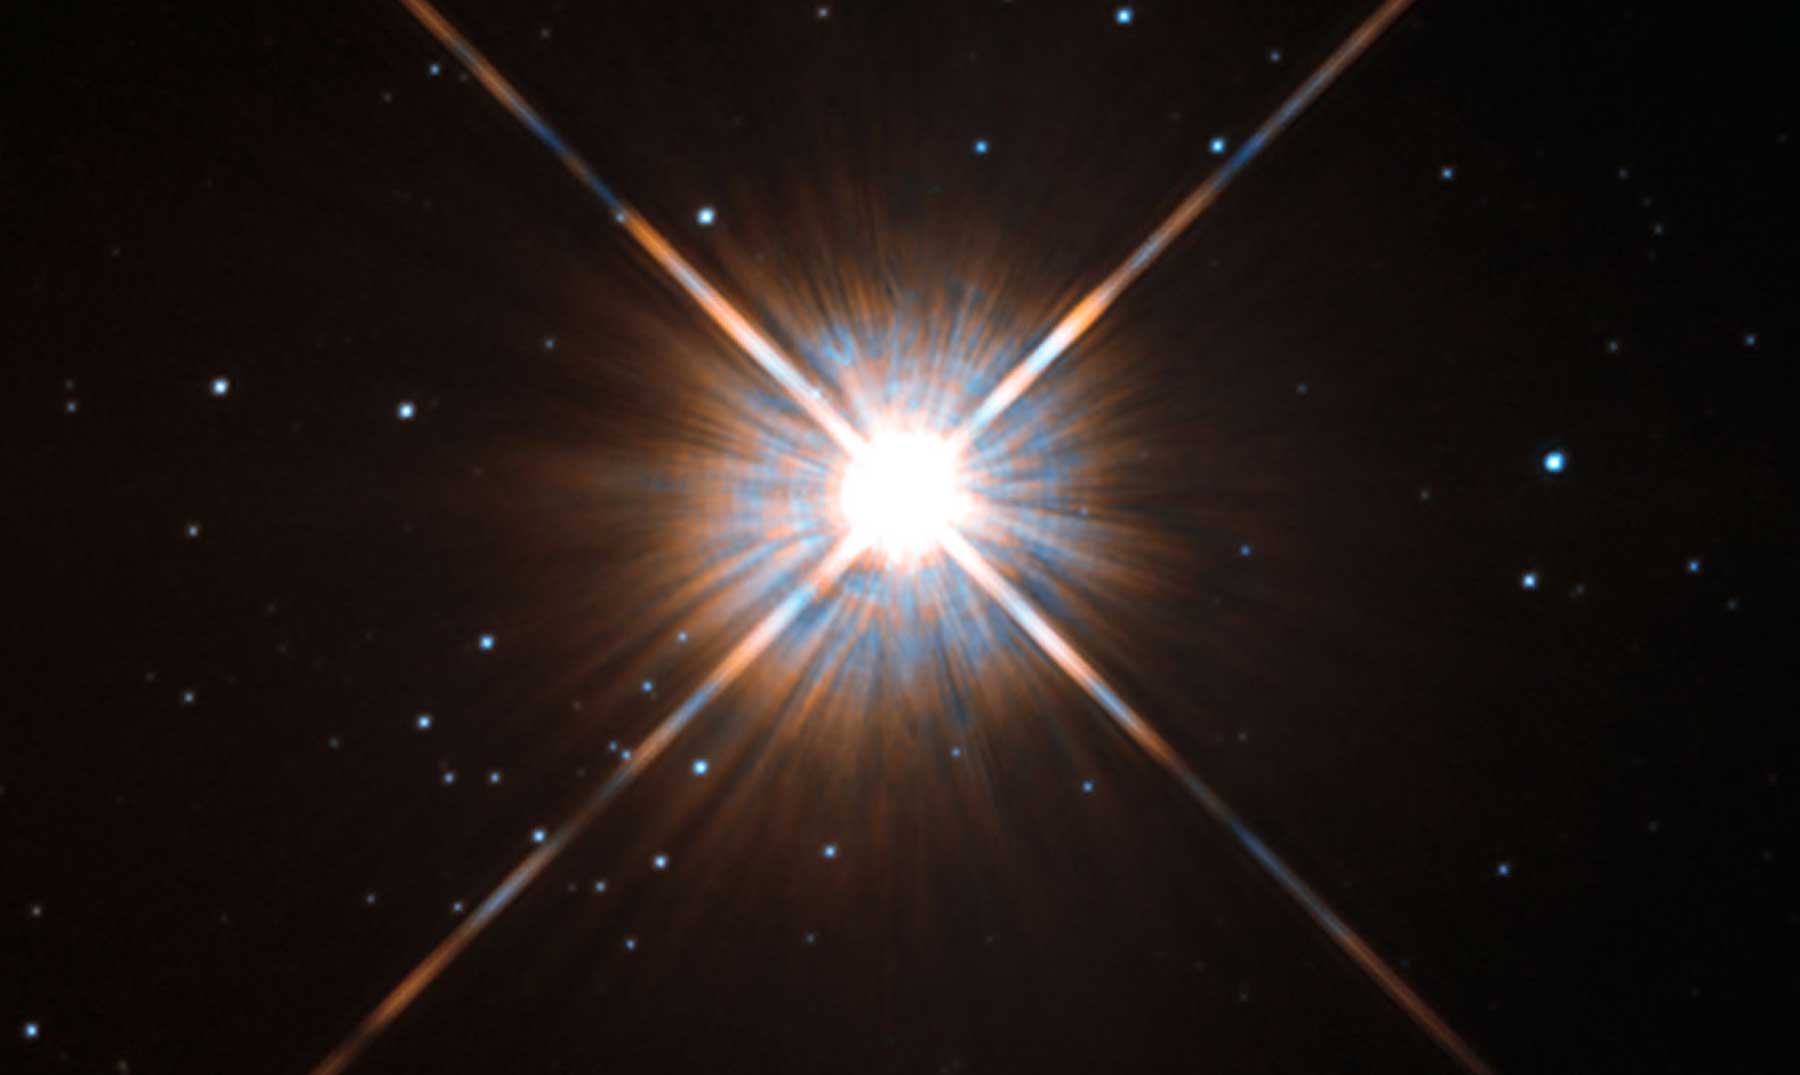 Próxima parada: Próxima Centauri, la estrella más cercana al sol